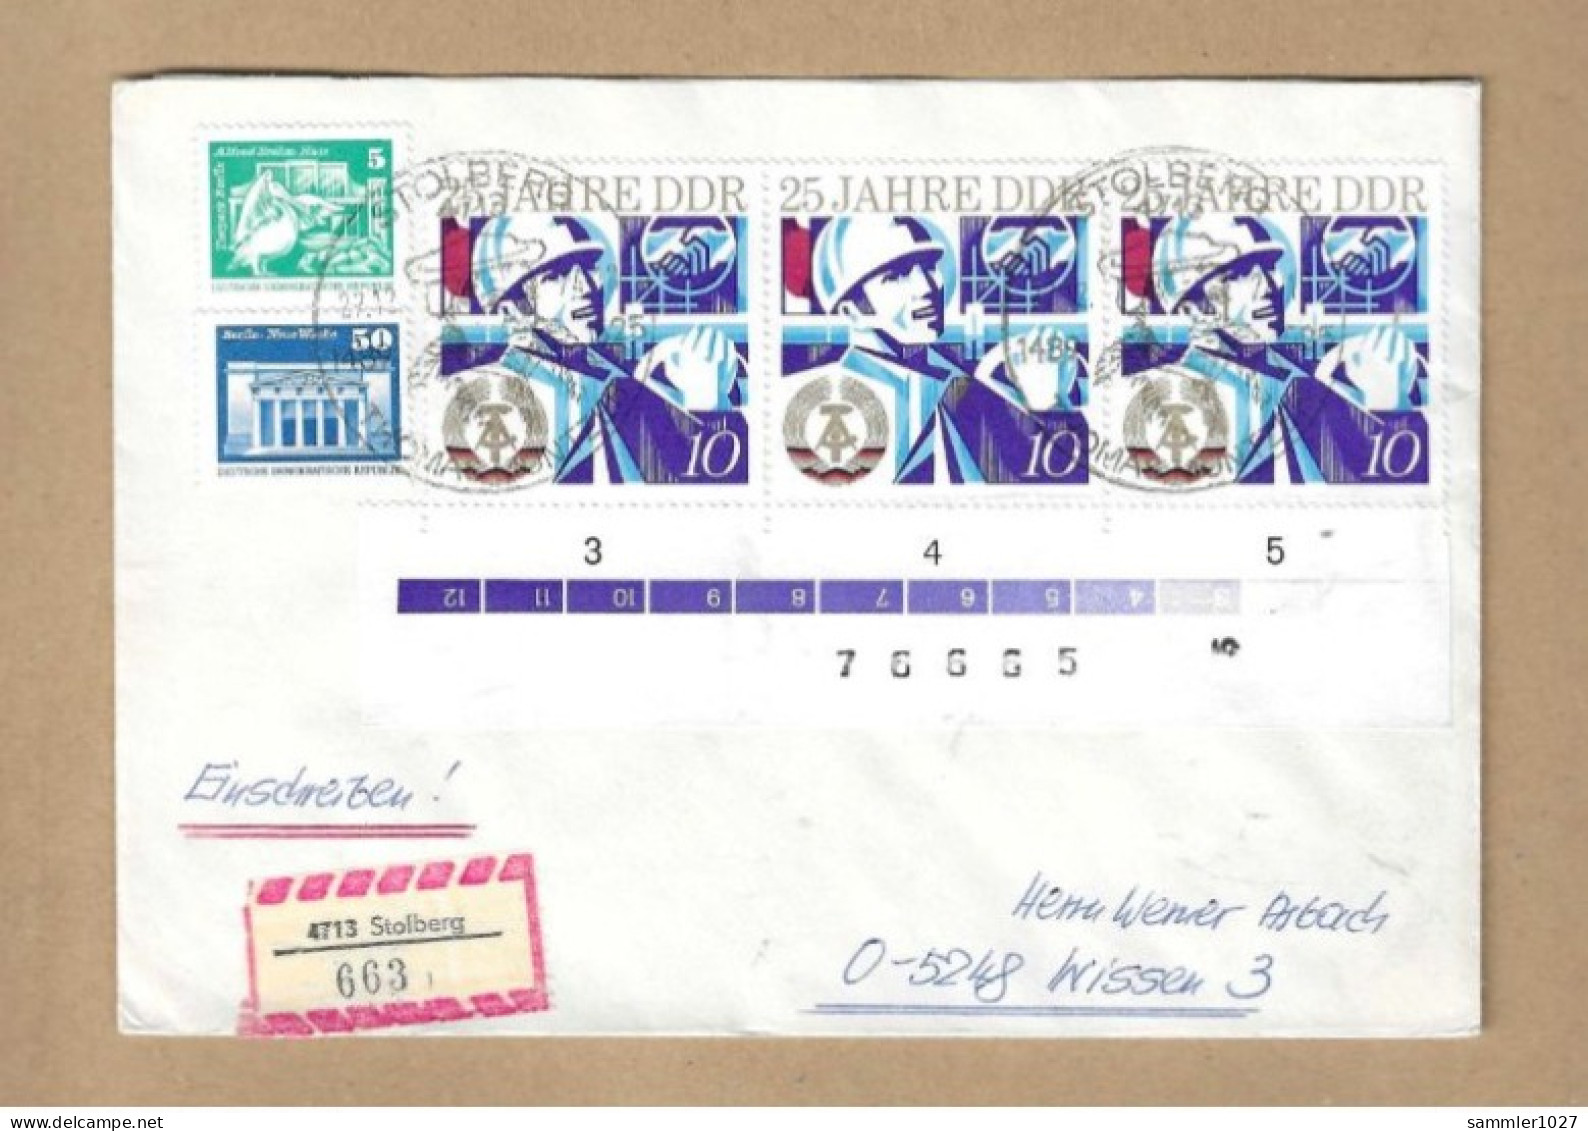 Los Vom 03.05 -  Einschreib-Briefumschlag Aus Stolberg 1974 Mit Zählnummern - Briefe U. Dokumente